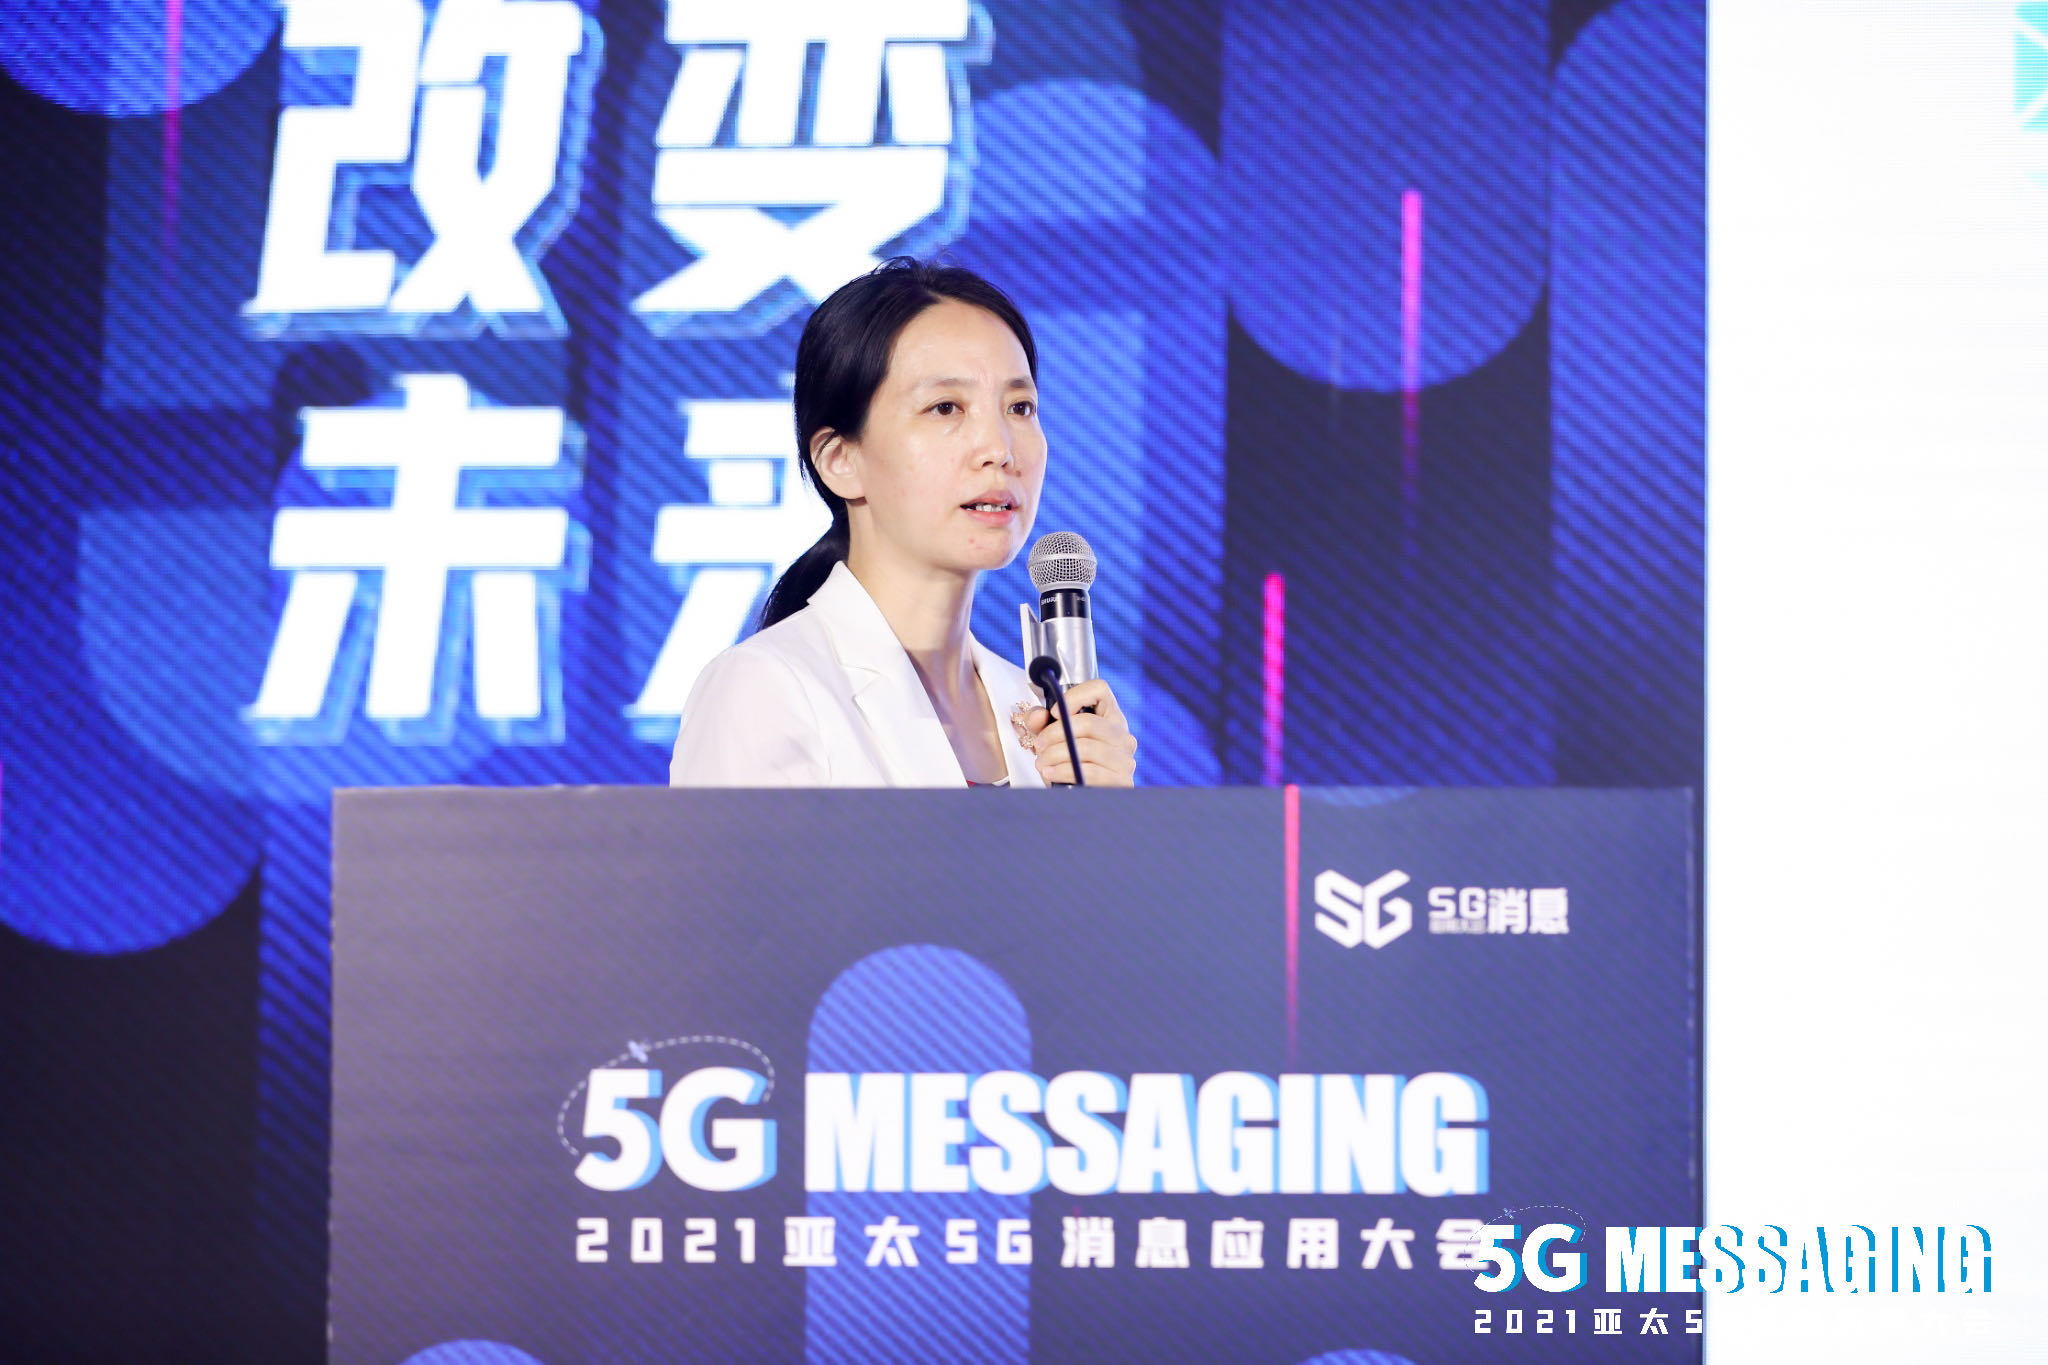 中国移动魏晨光：多措并举加速推进5G消息商用进程